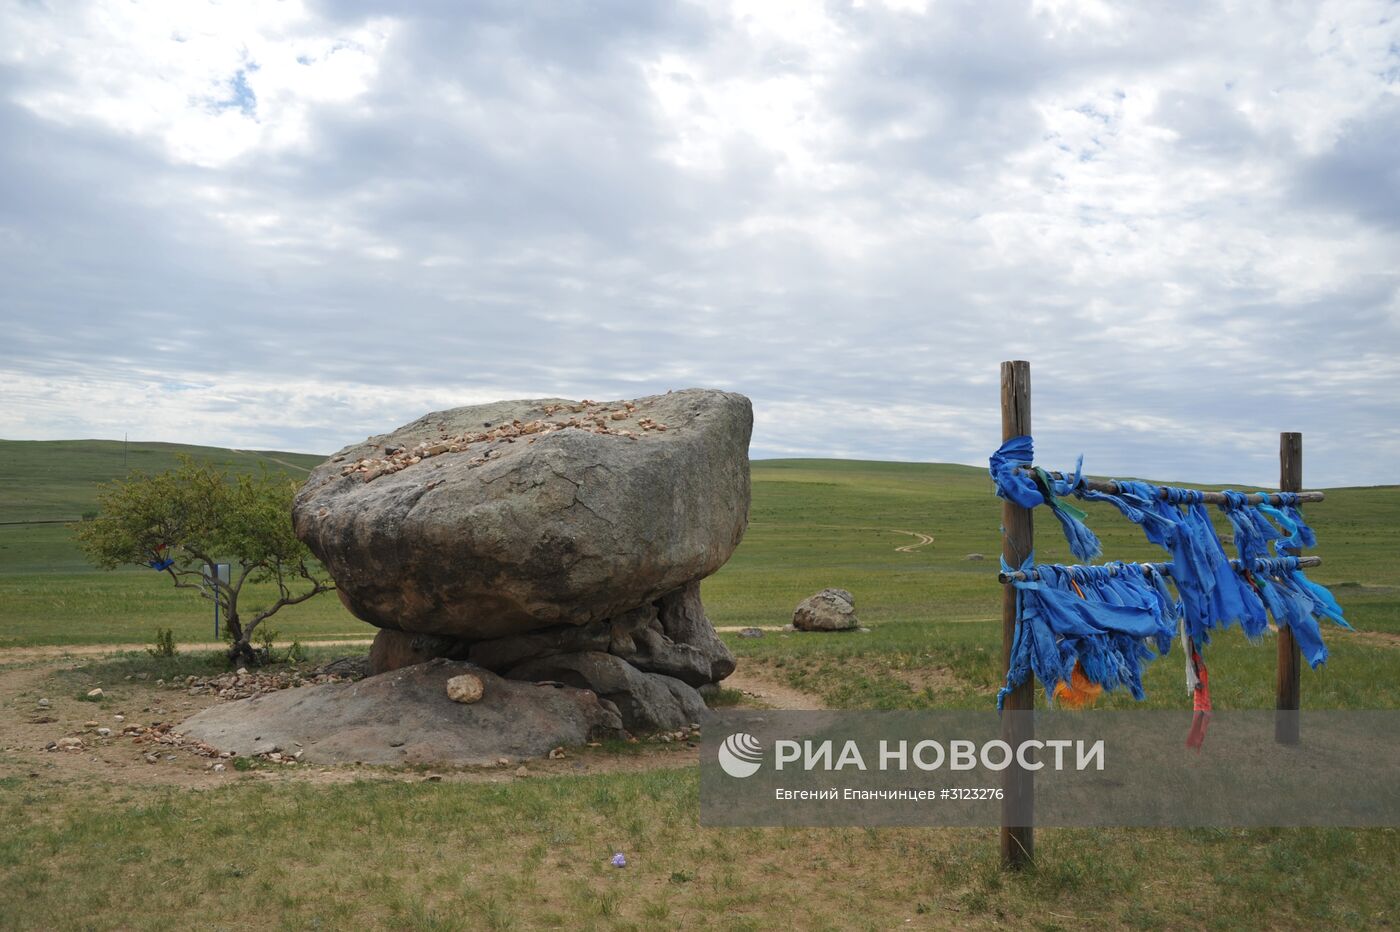 Заказник "Агинская степь" в Забайкальском крае